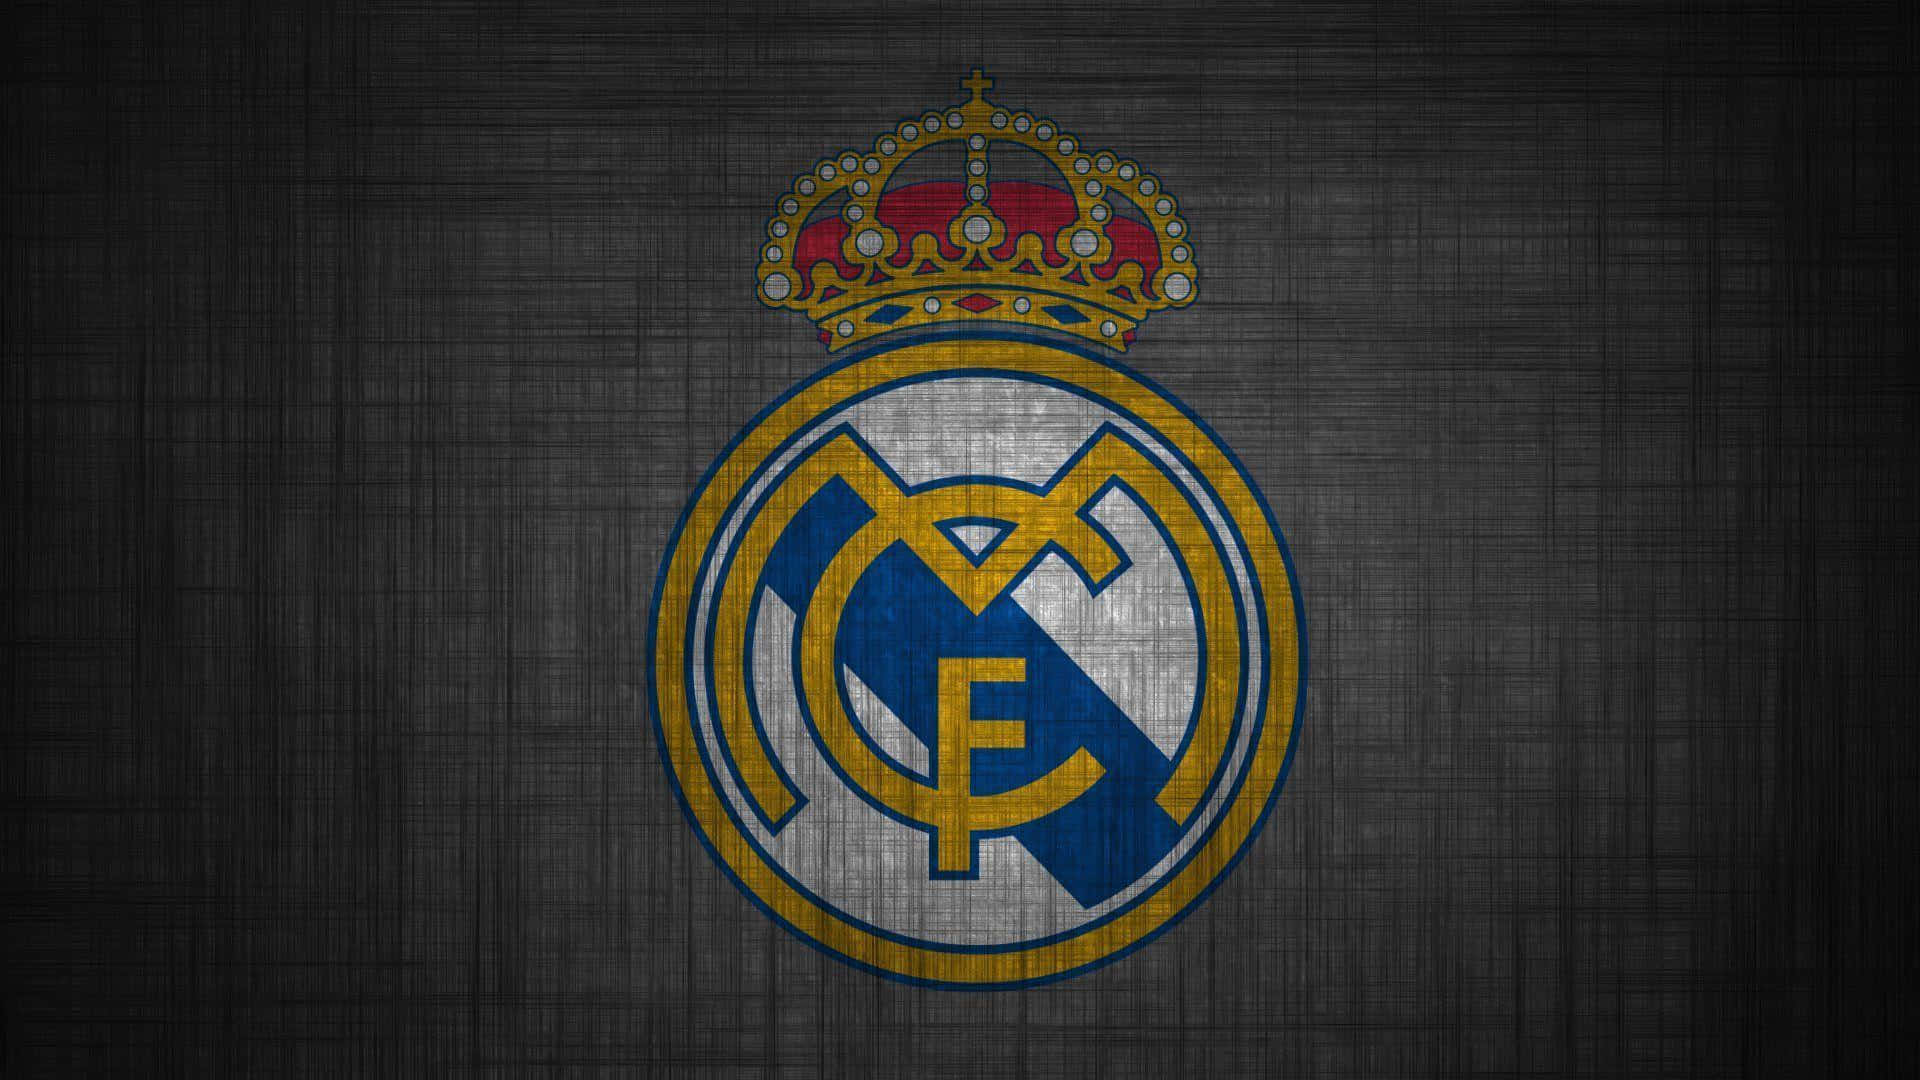 Idieci Volte Campioni D'europa, Il Real Madrid!